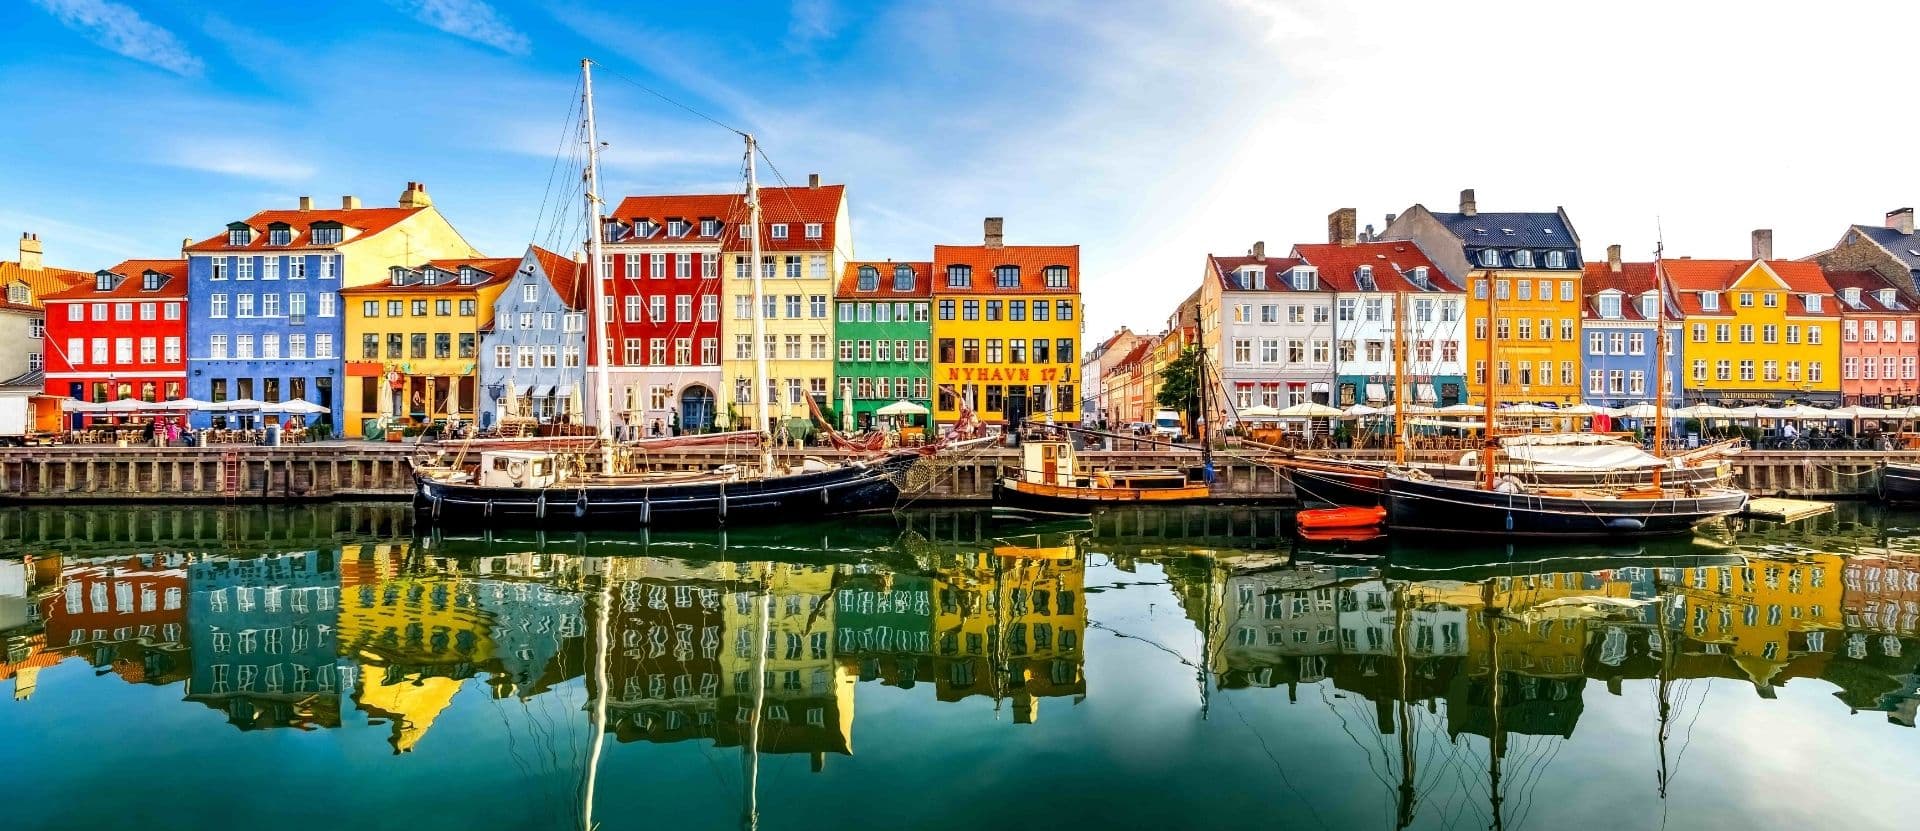 Maisons colorées sur la rivière à Copenhague, Danemark